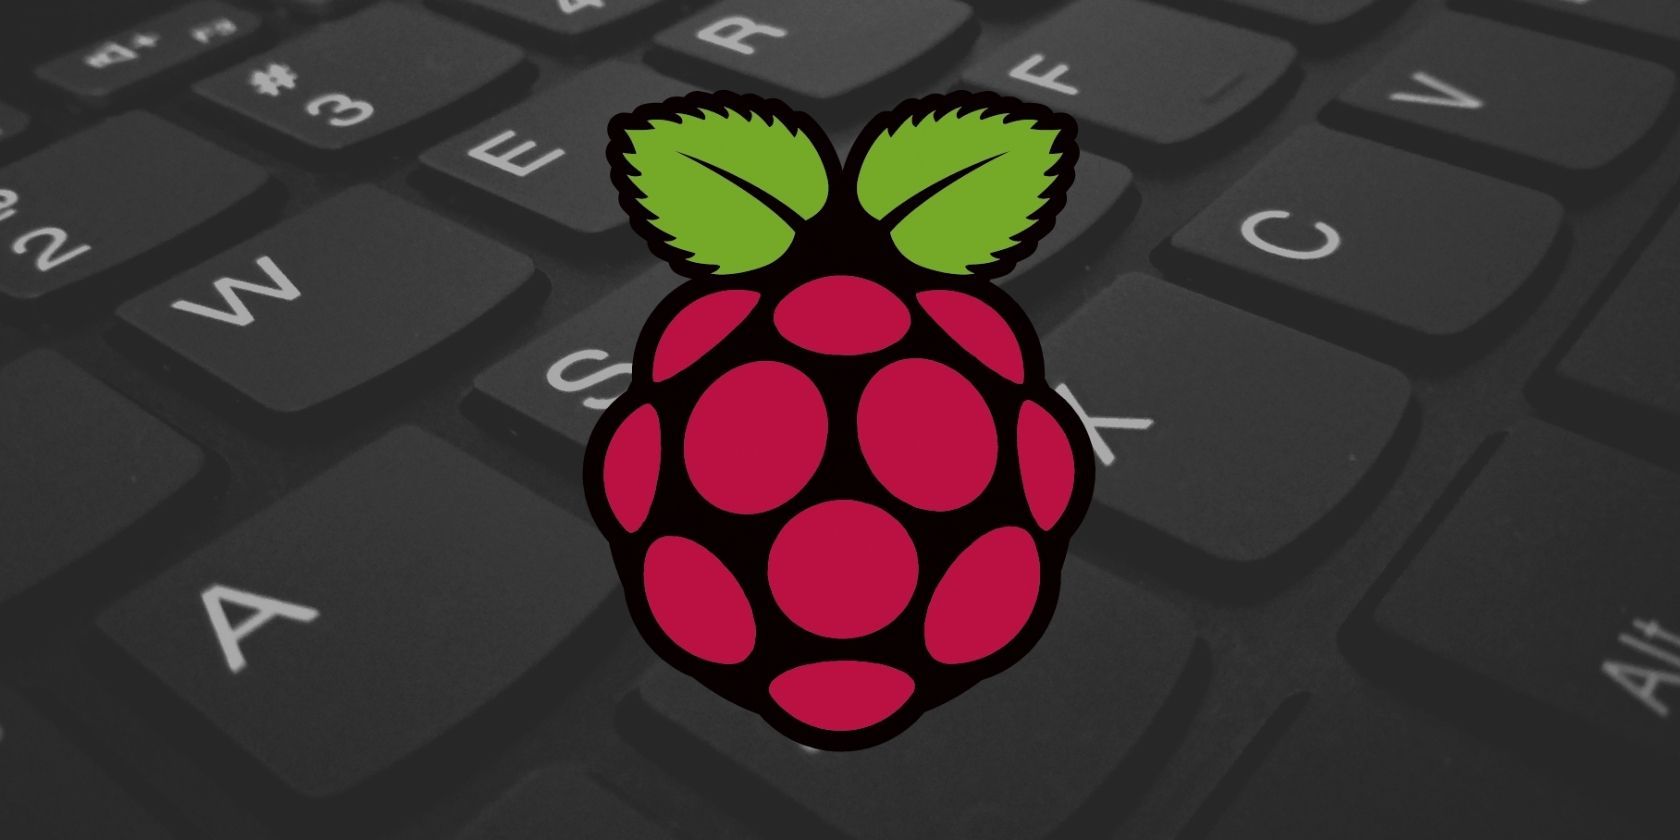 Raspberry Pi keyboard